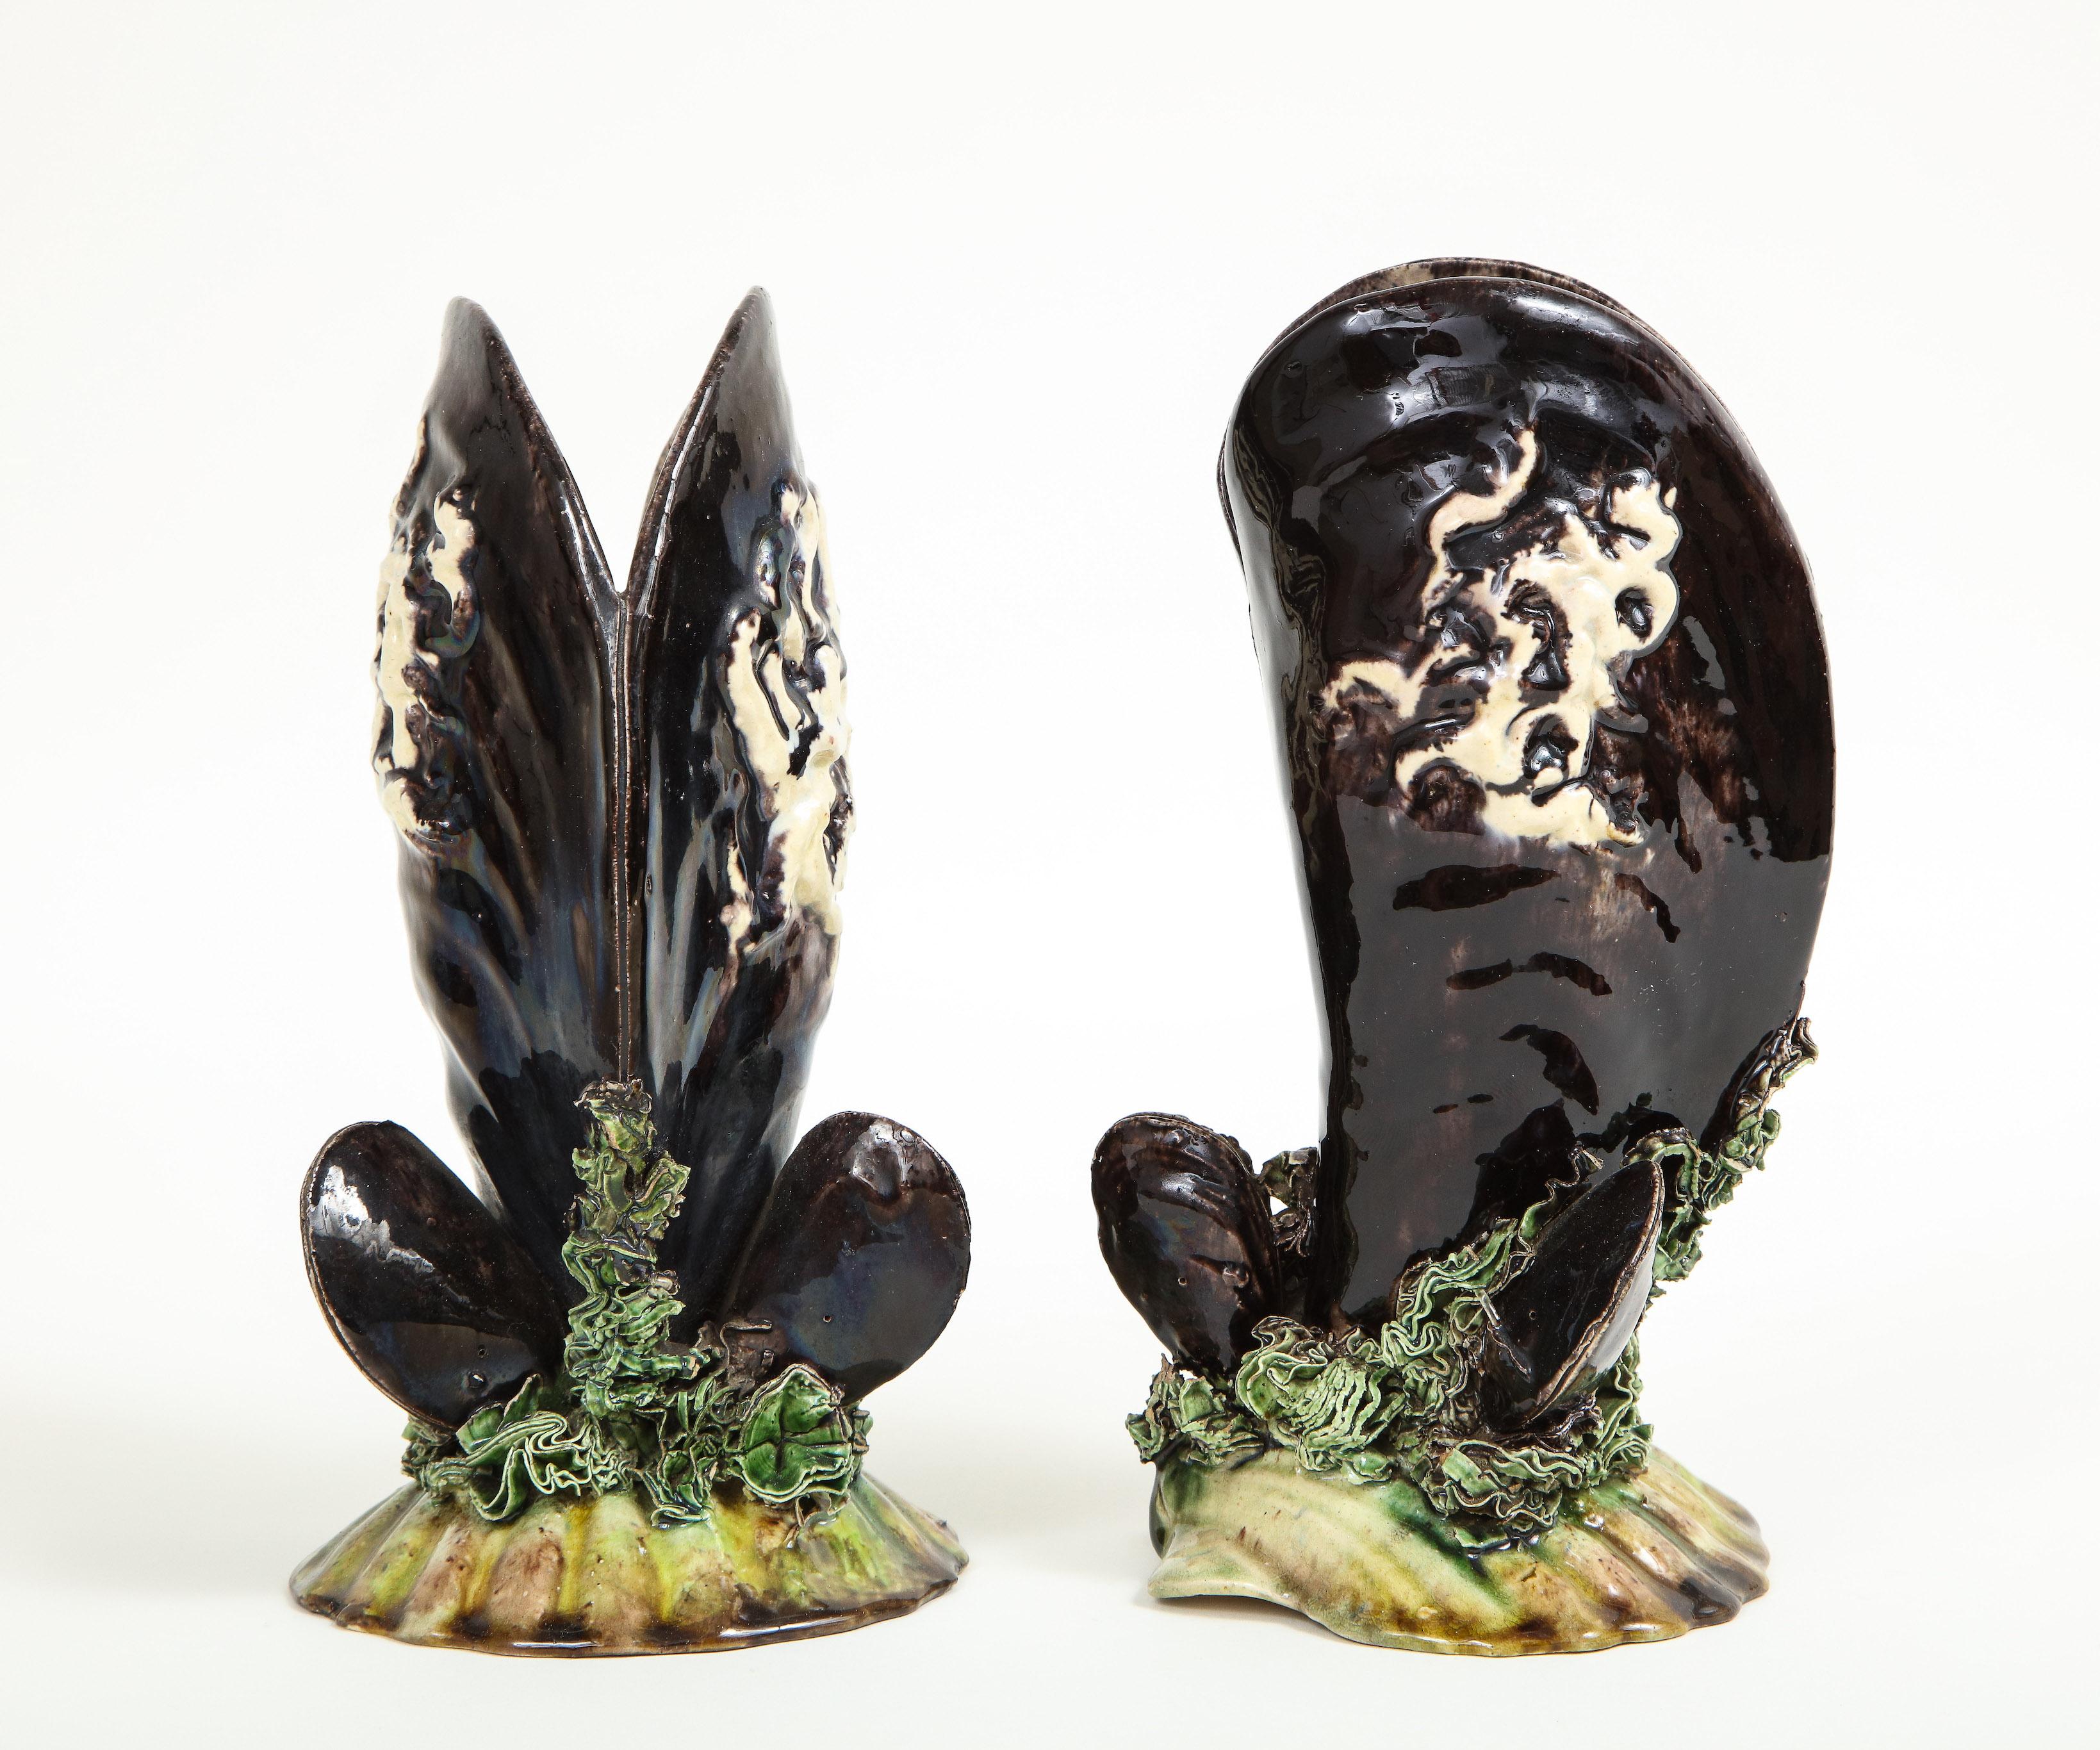 Ungewöhnlich ausgefallene Vasen in Form von schwarzen Muschelschalen, die auf einem Bett aus Algen und einer Jakobsmuschel ruhen. Caldas da Rainhas Fabrikmarke auf der Unterseite.